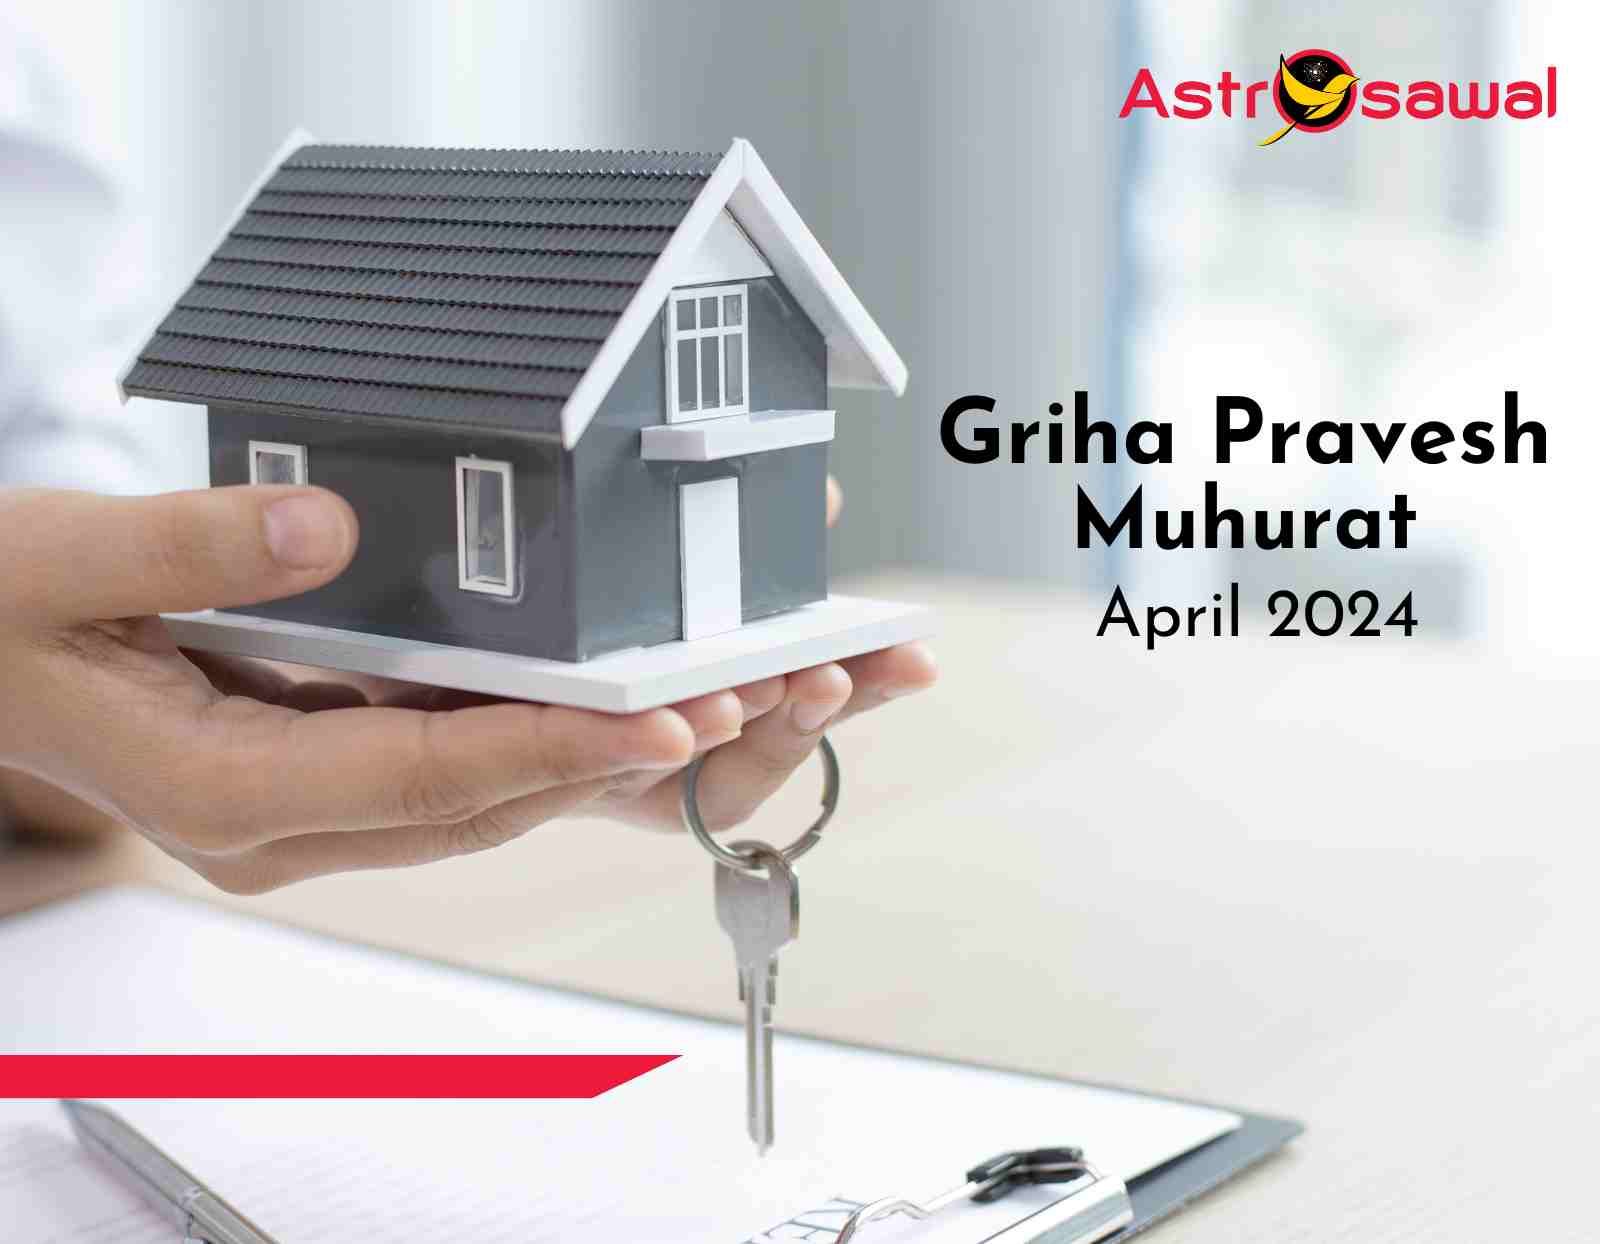 Griha Pravesh Muhurat: Blessings for Your New Home April 2024